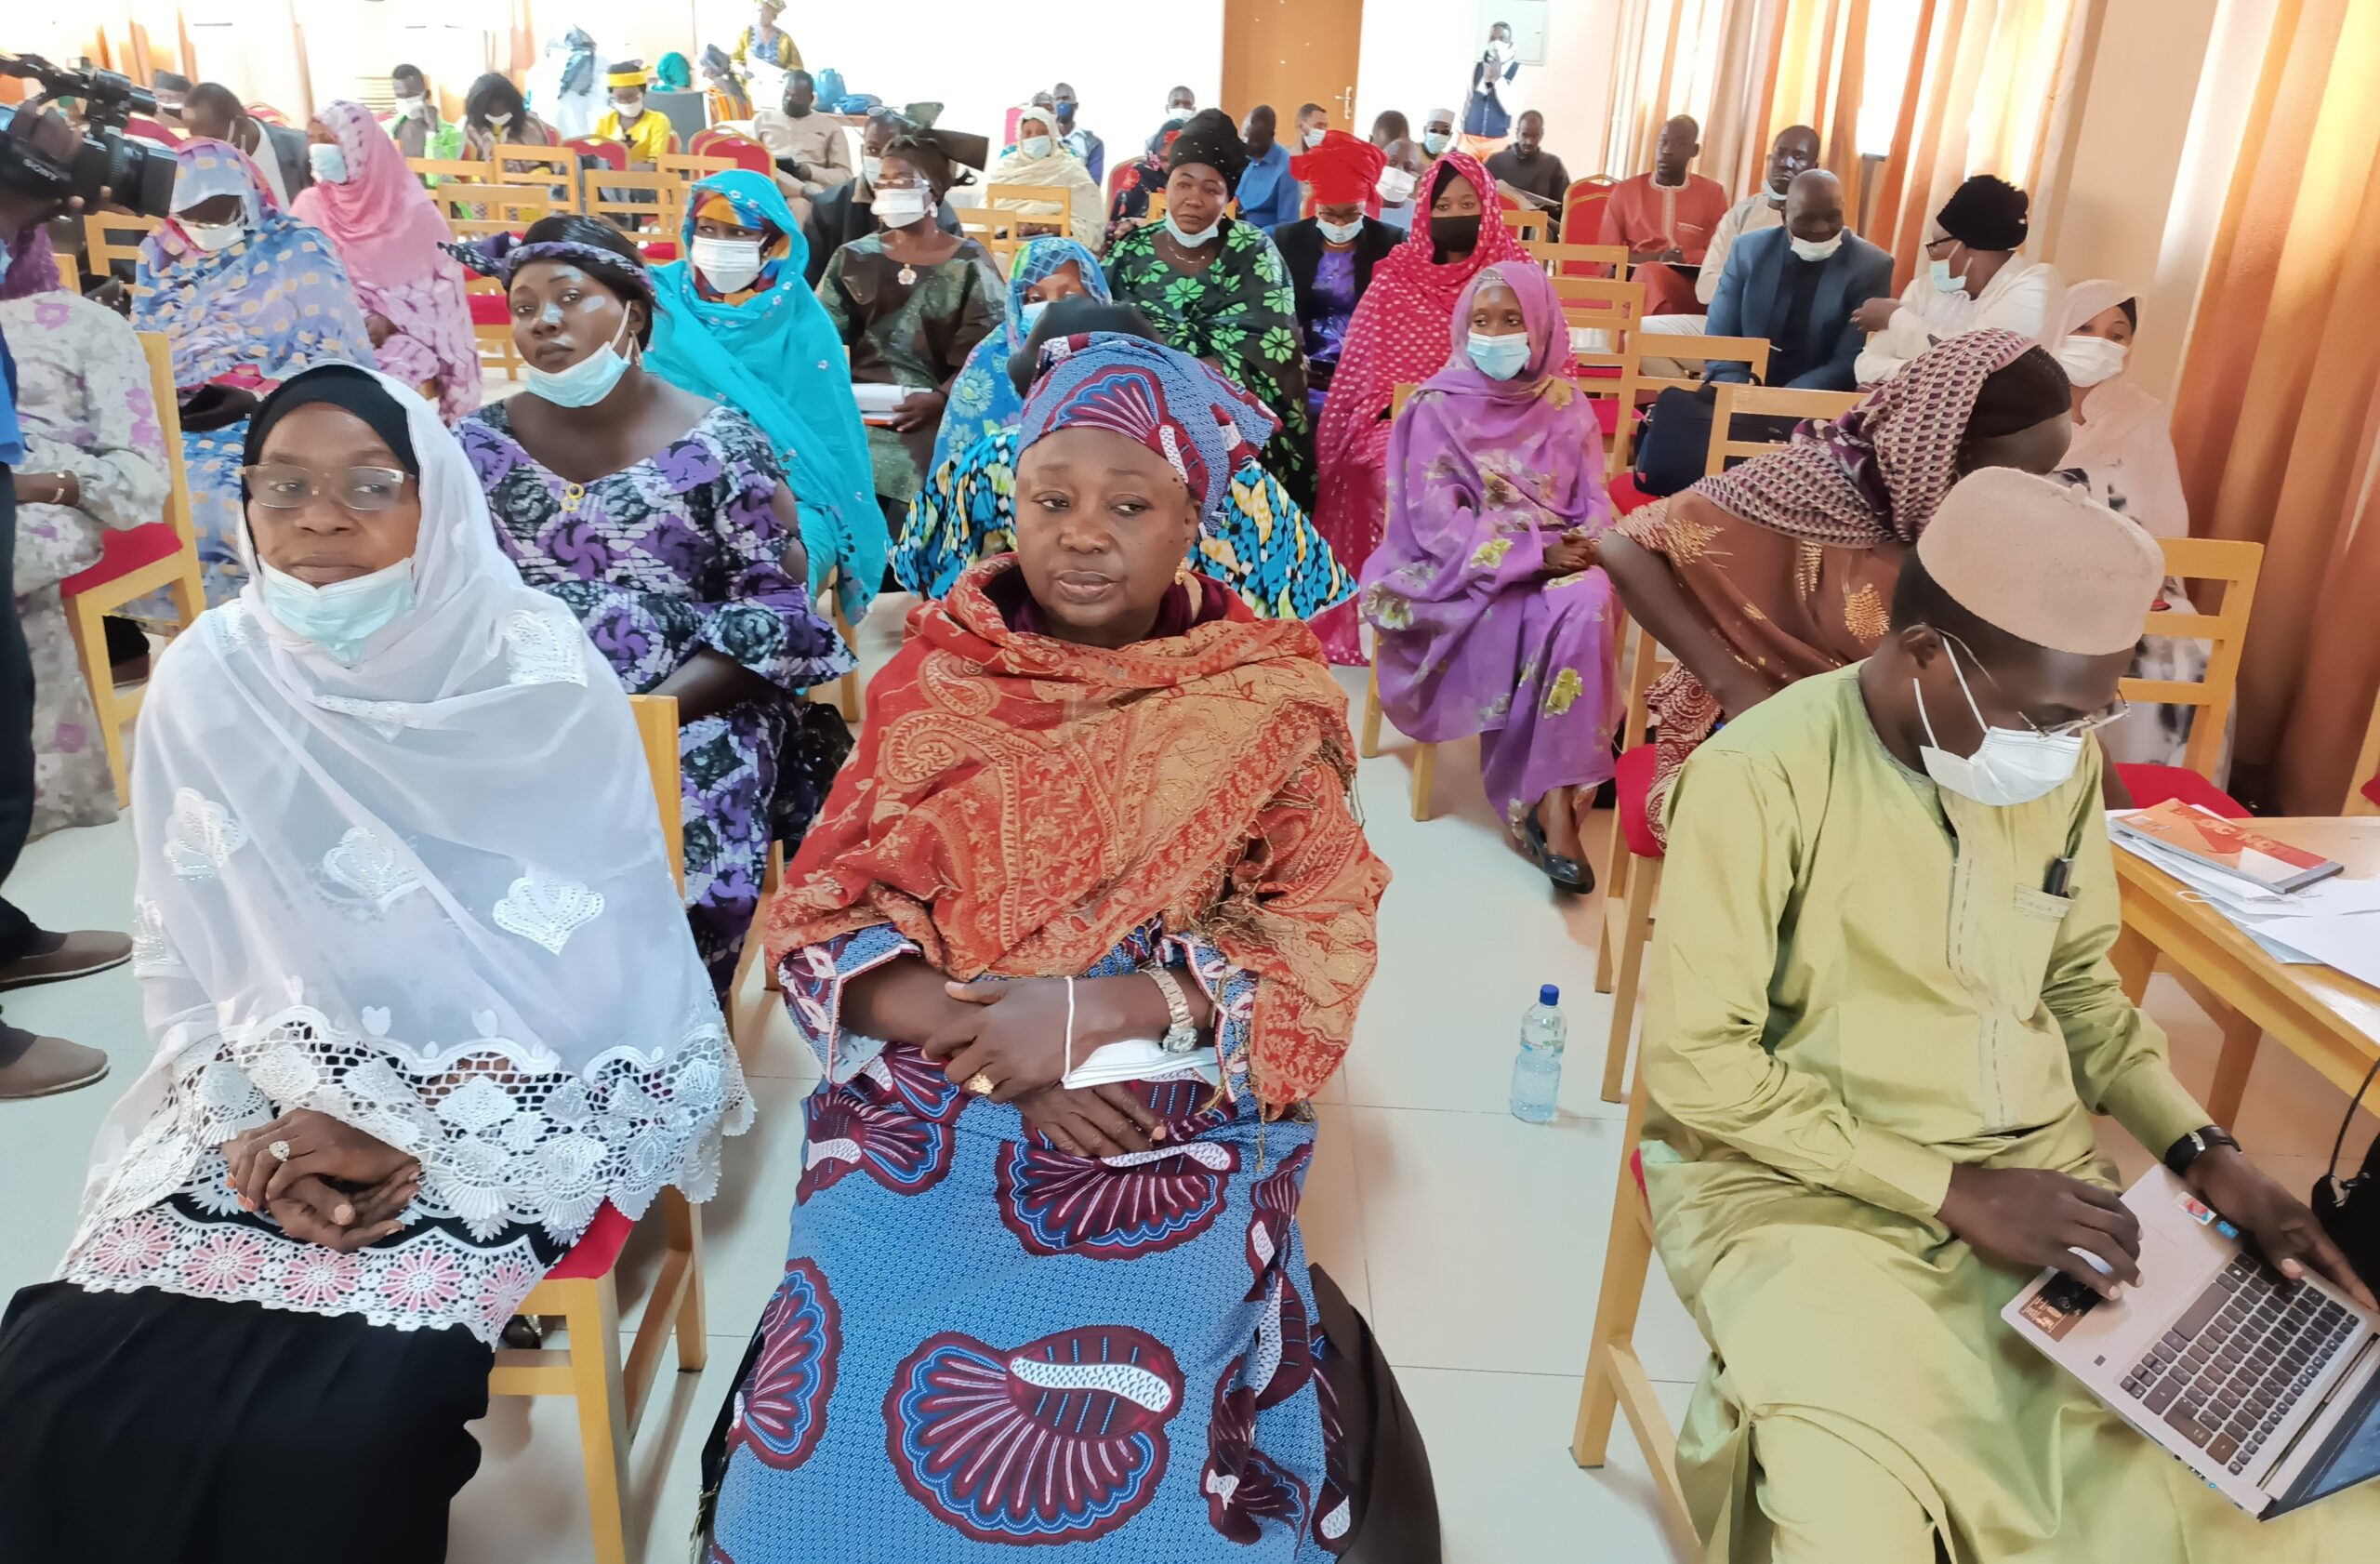 Société : le ministère de la Femme organise une assemblée générale des femmes vivant en milieu rural